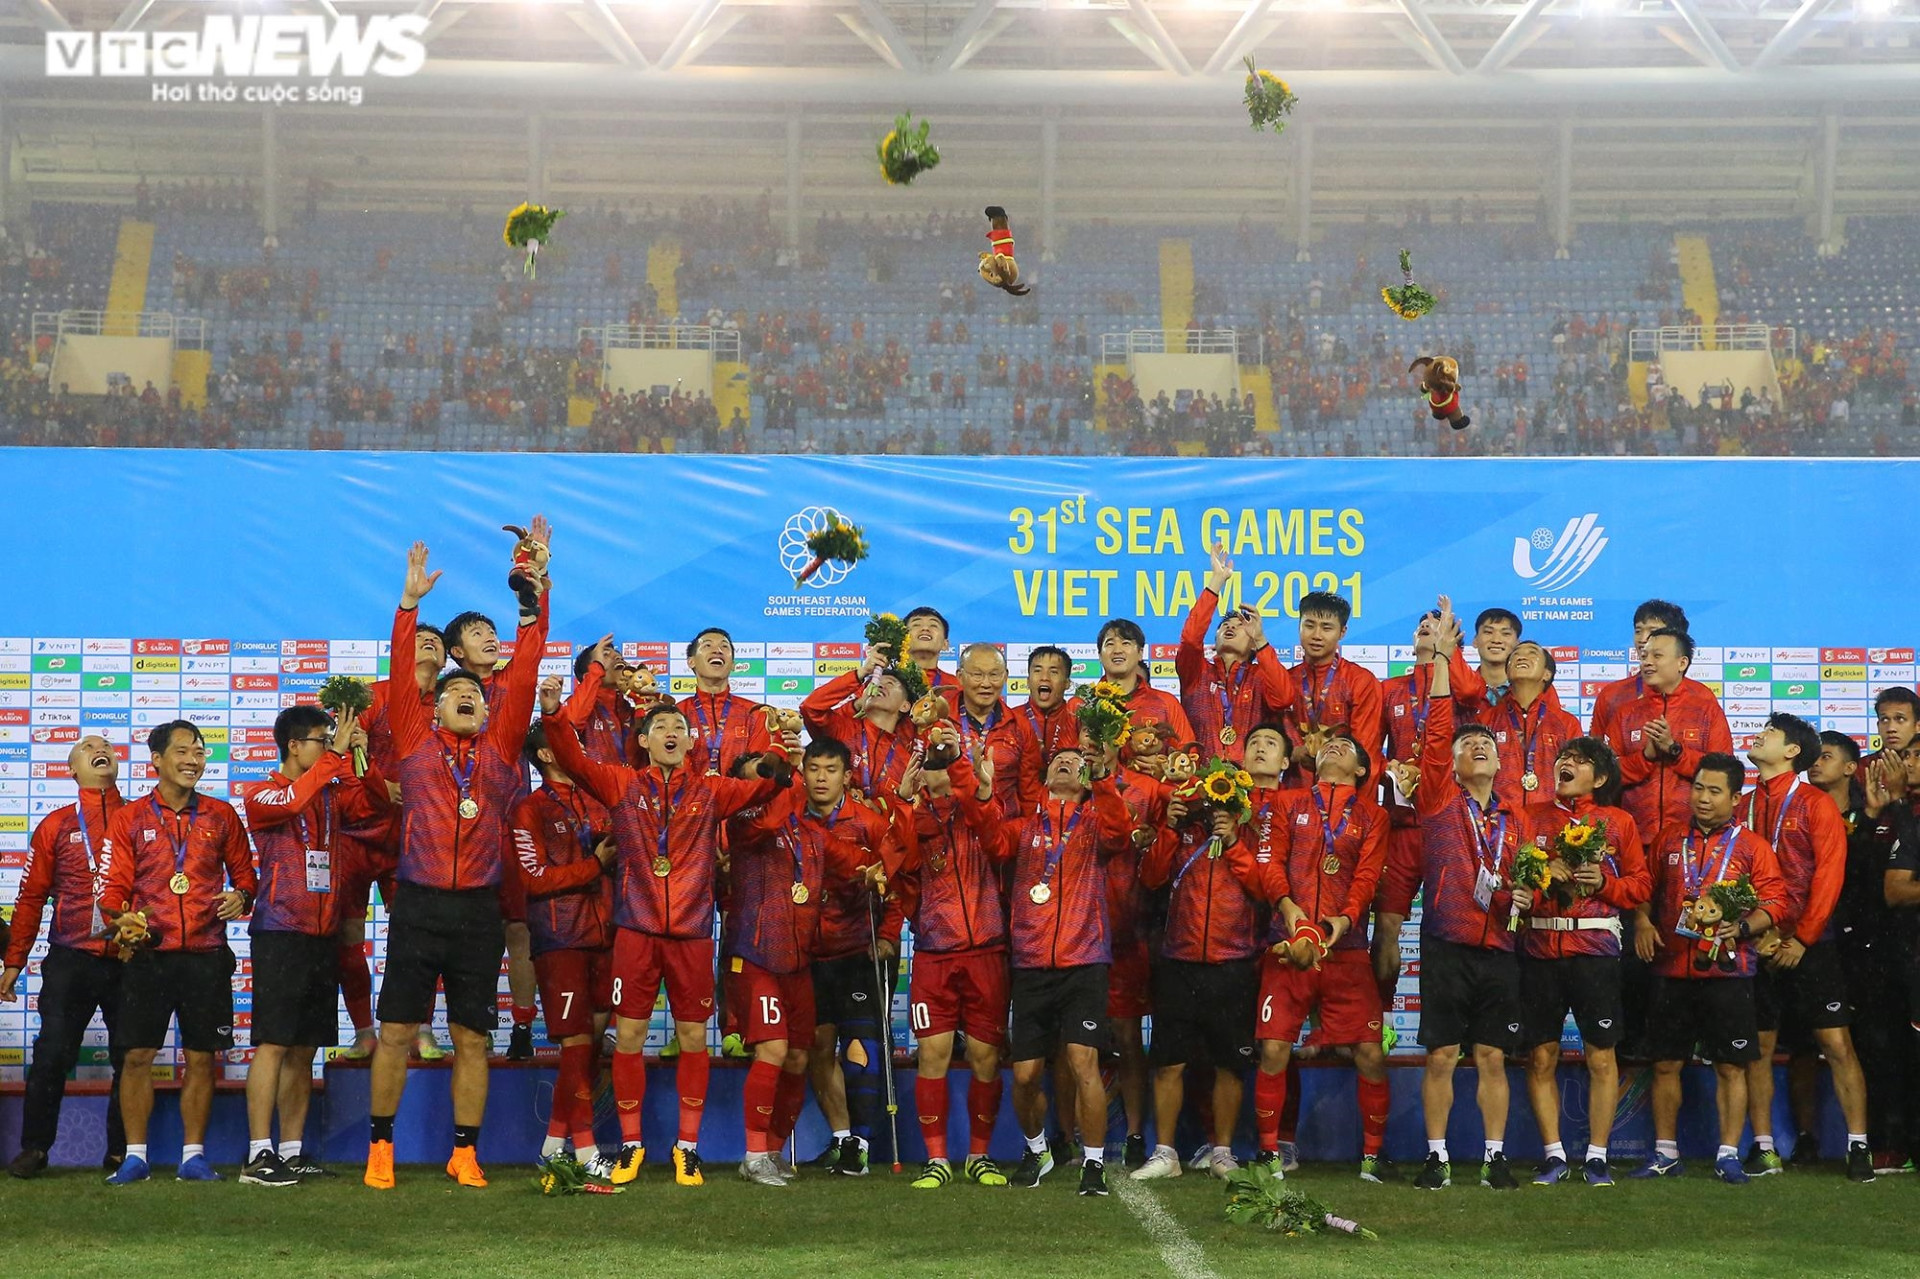 HLV Park Hang Seo lặng người phút chia tay U23 Việt Nam sau kỳ tích SEA Games - 15